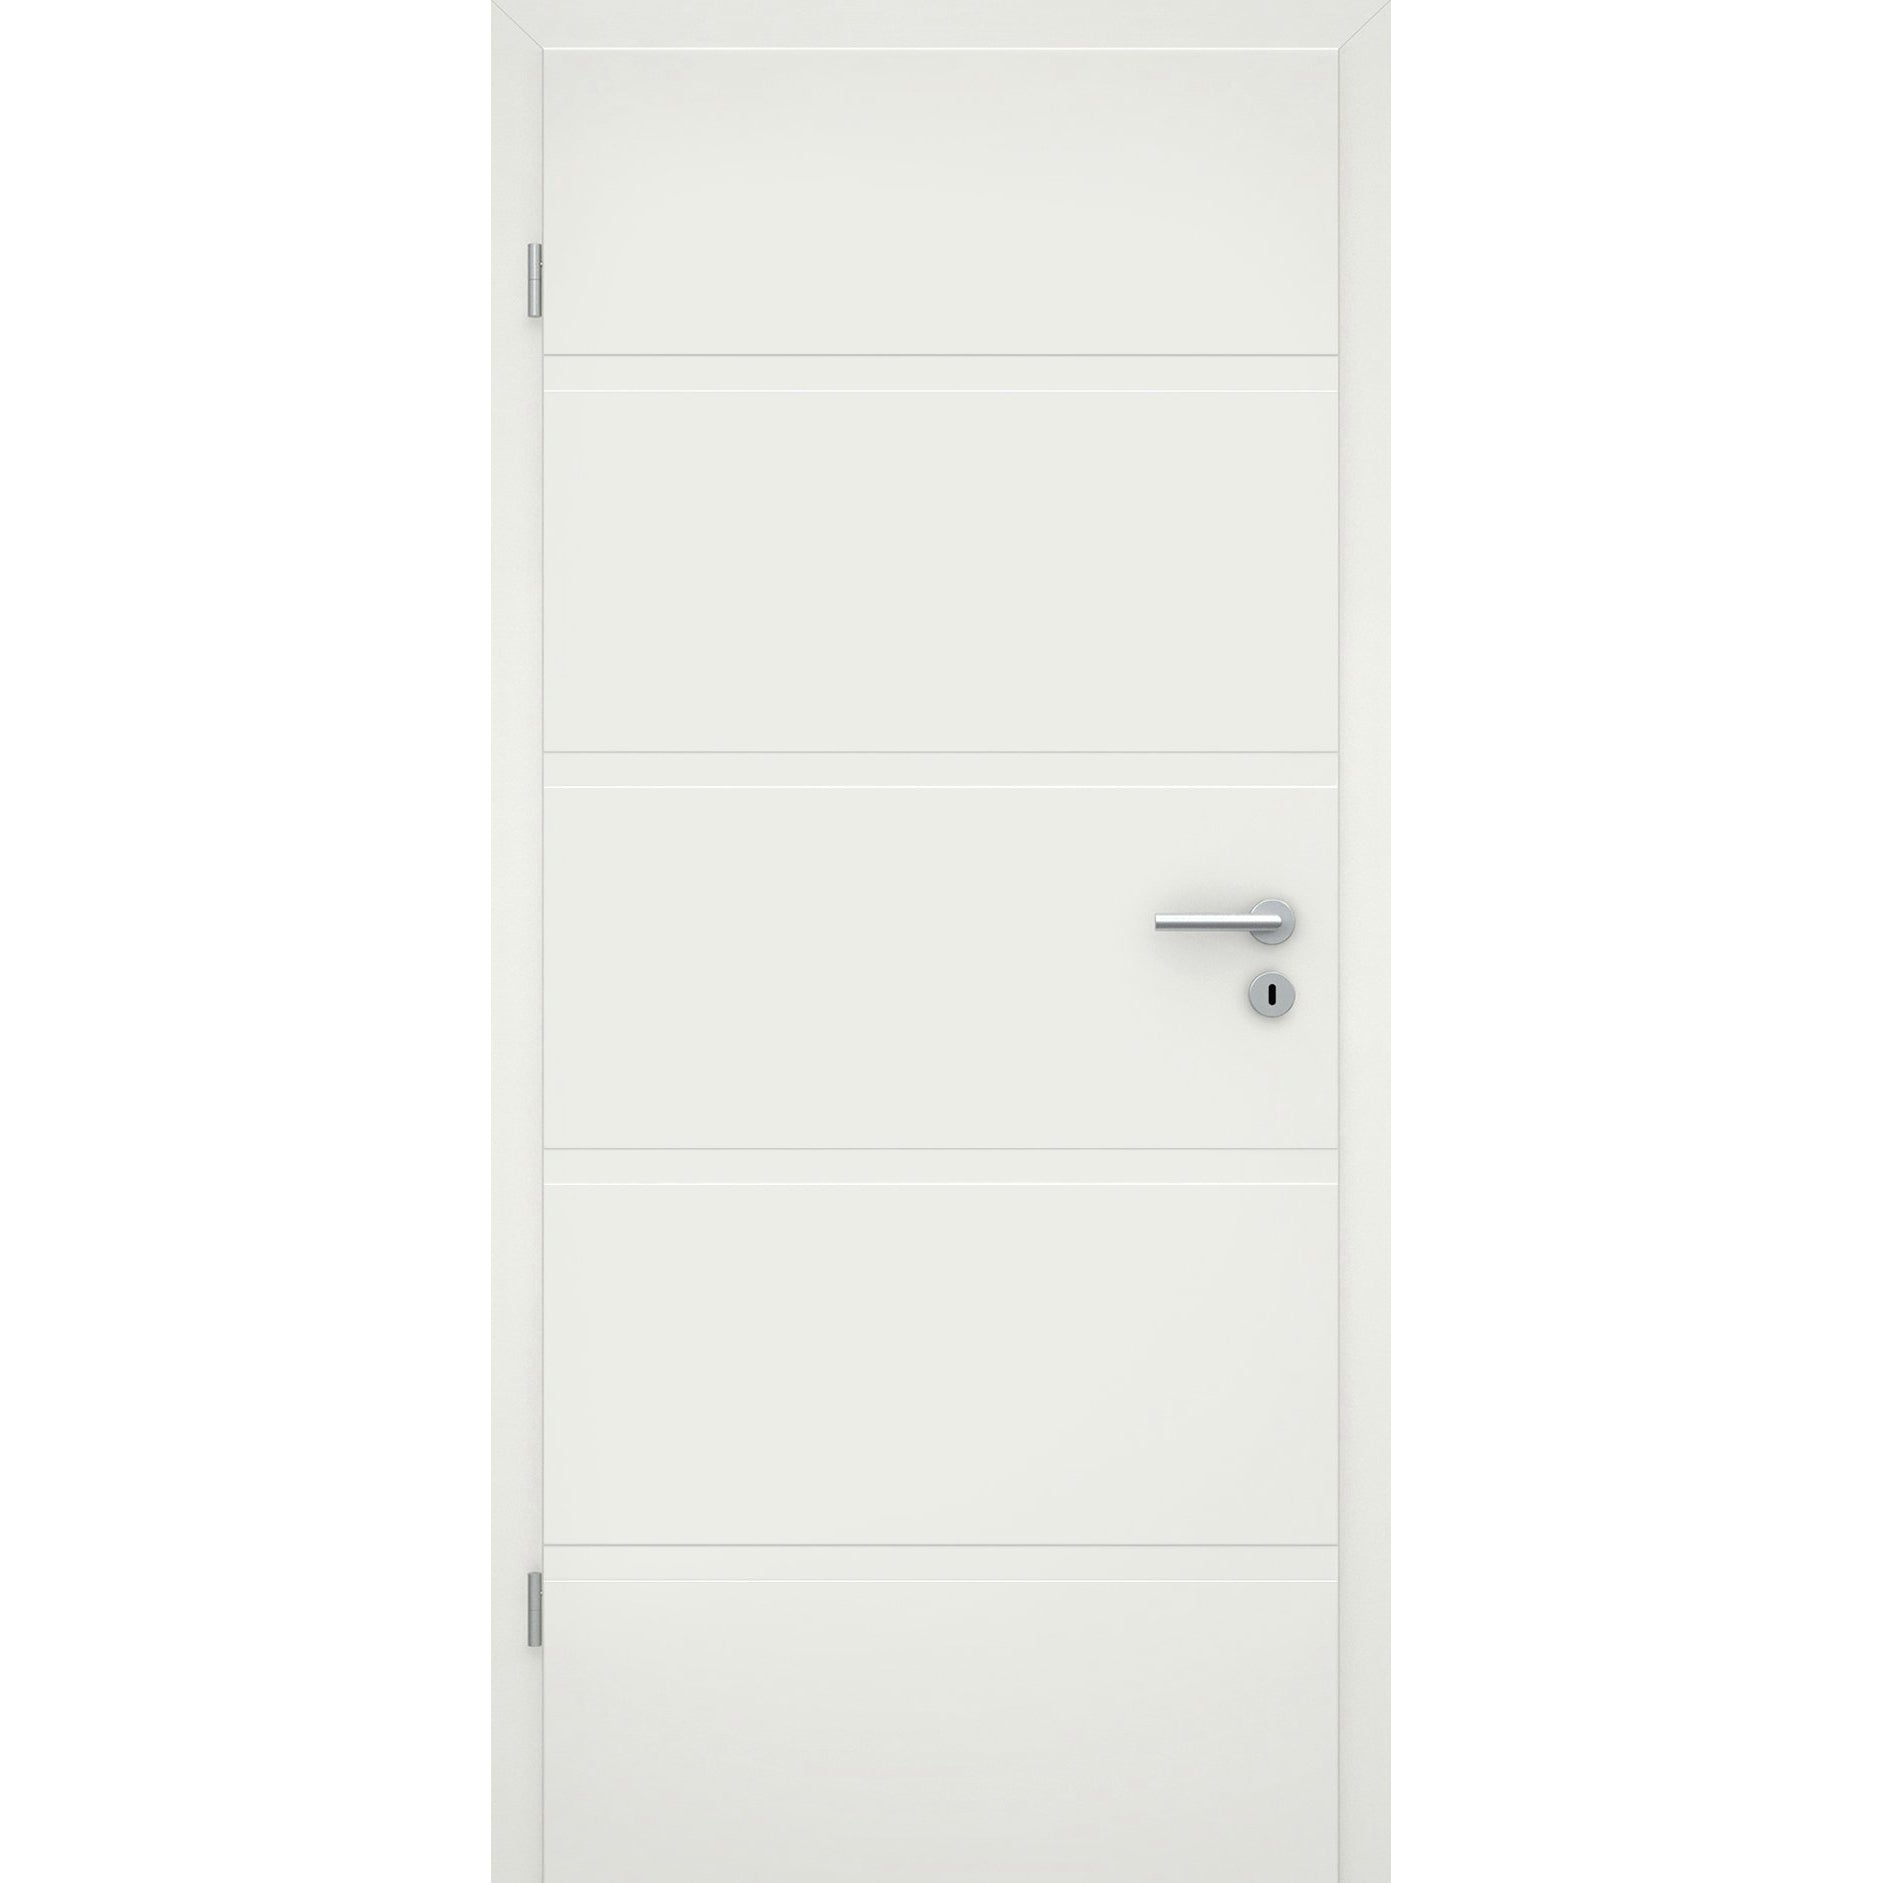 Wohnungseingangstür mit Zarge soft-weiß 4 breite Rillen Eckkante SK2 / KK3 - Modell Designtür QB41